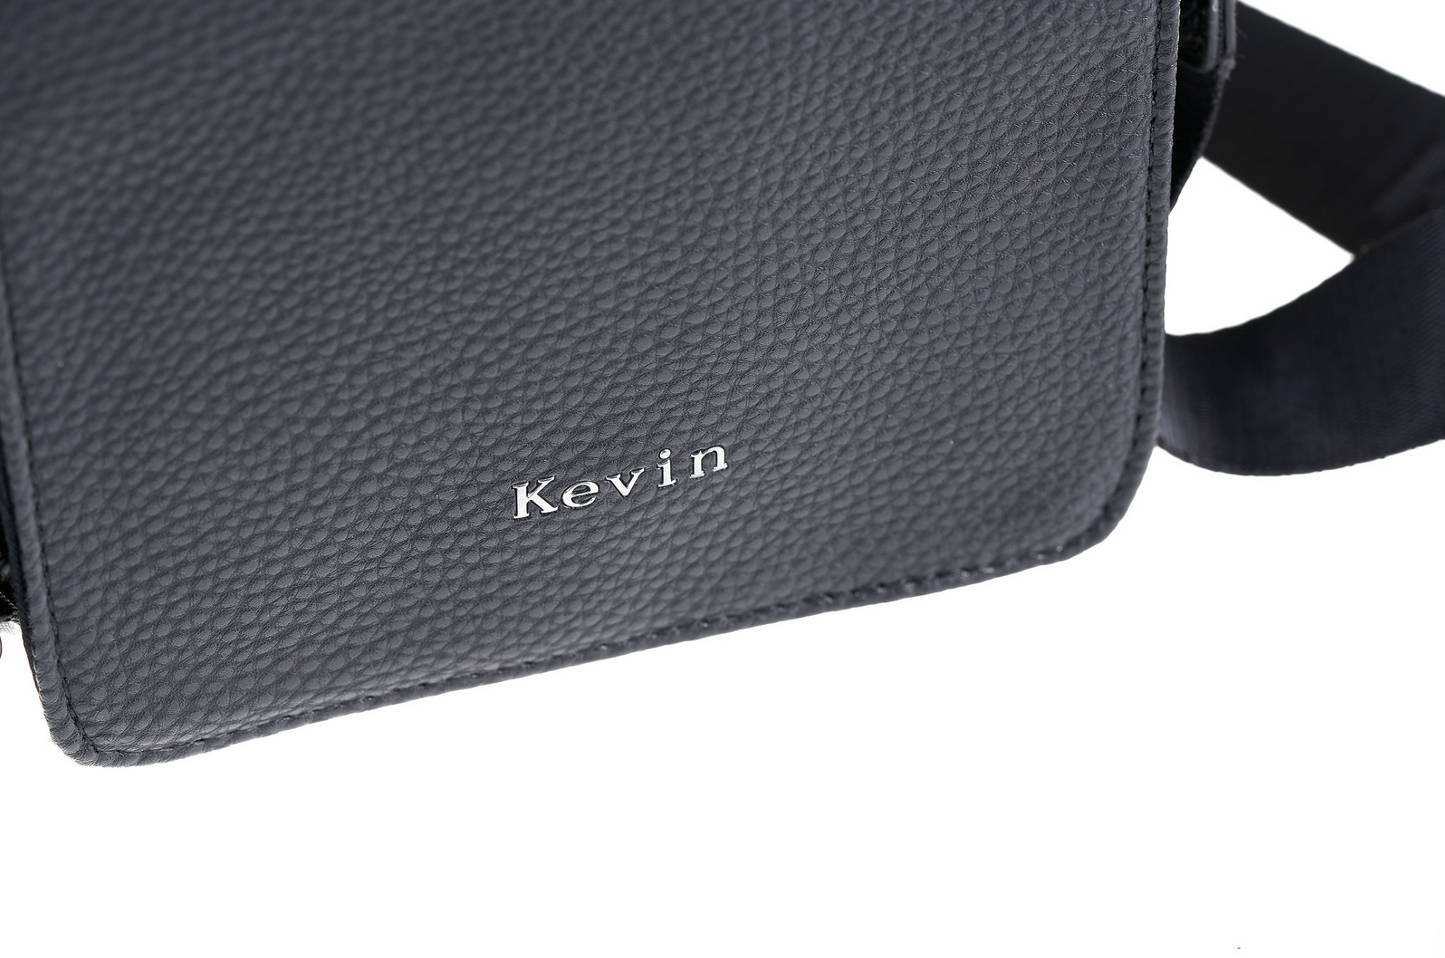 Kevin Jeans handbag for men